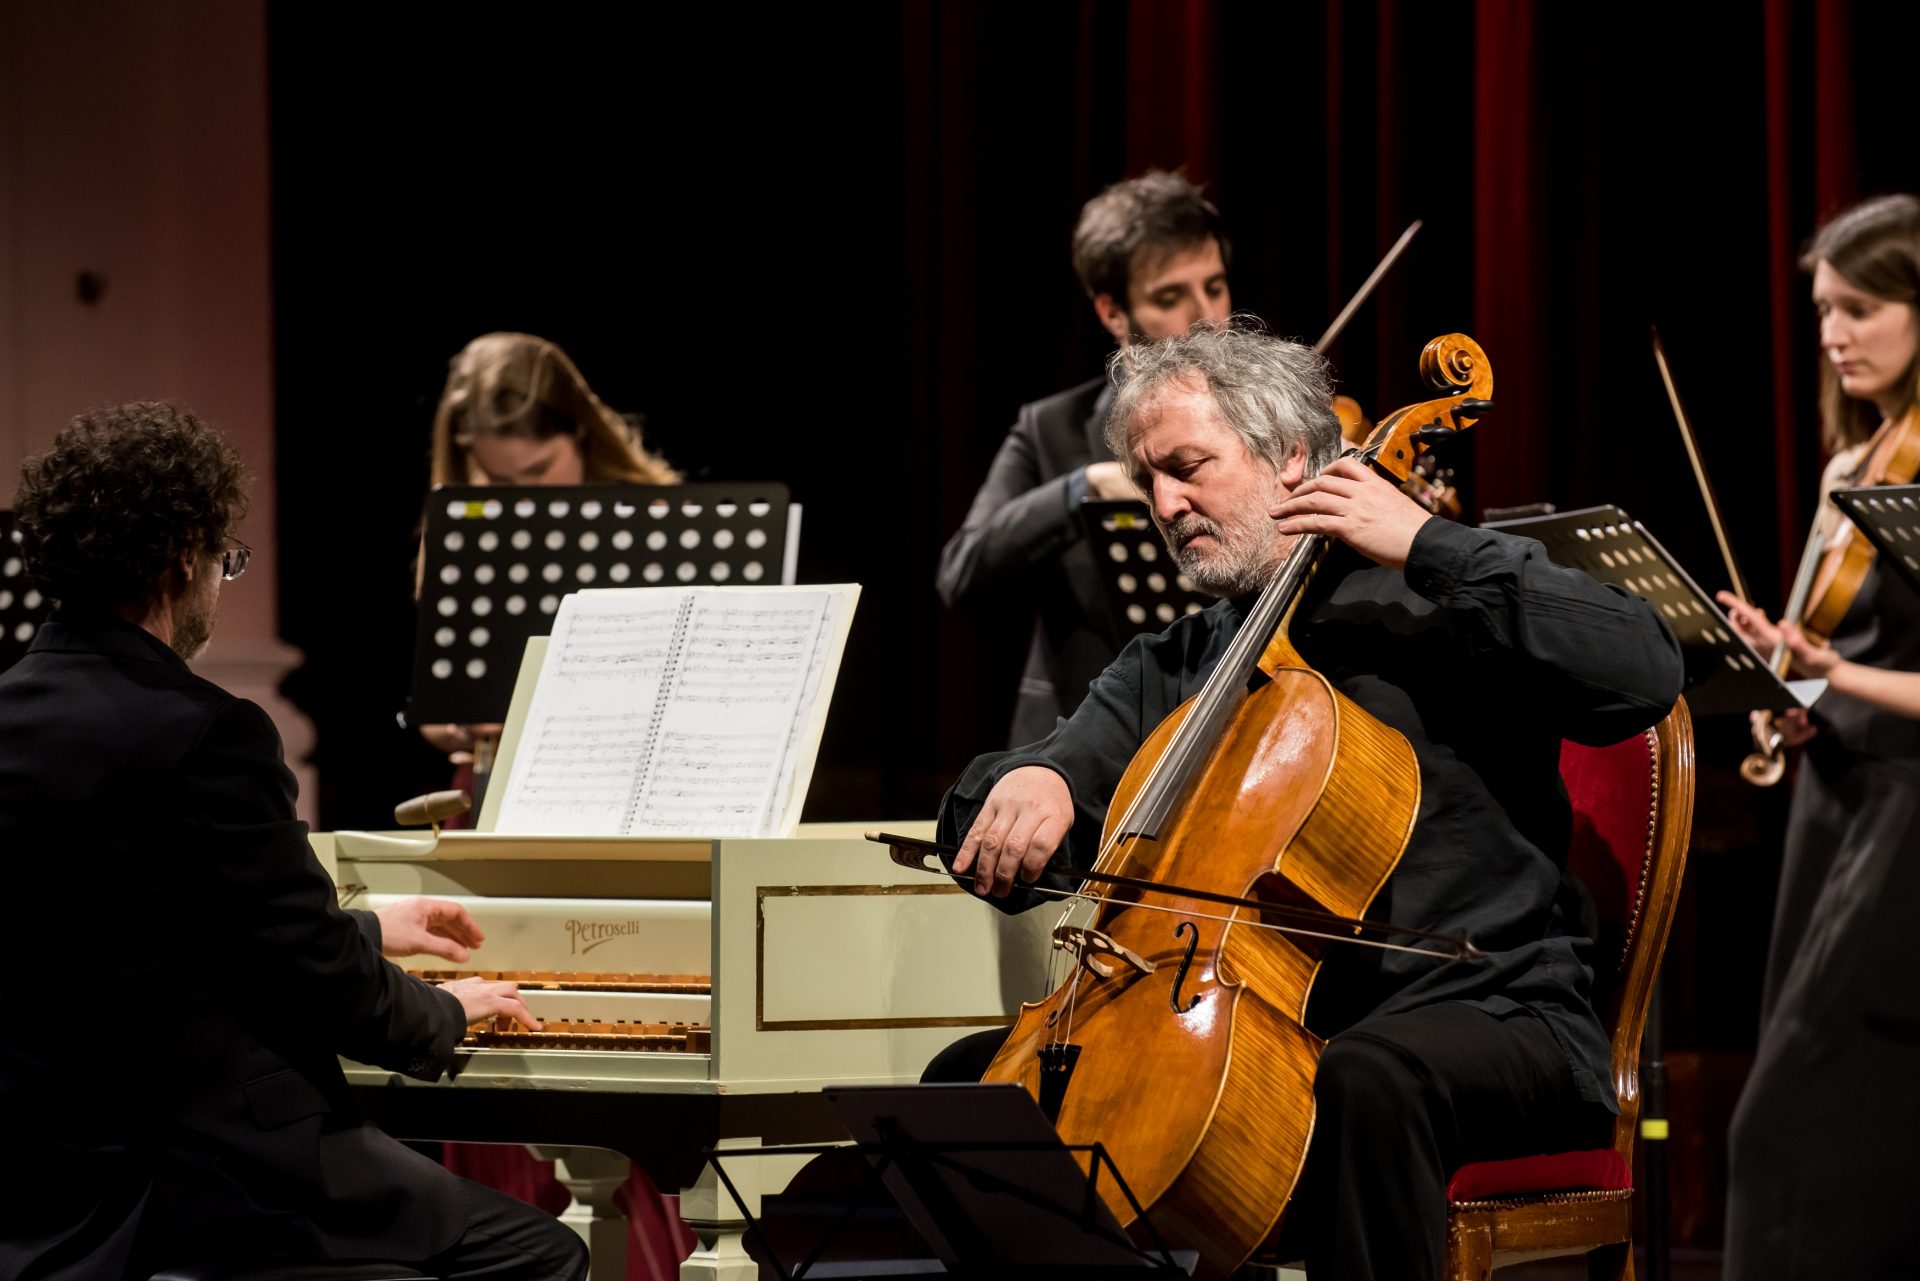 Associazione Scarlatti, Mario Brunello in concerto al Teatro delle Palme